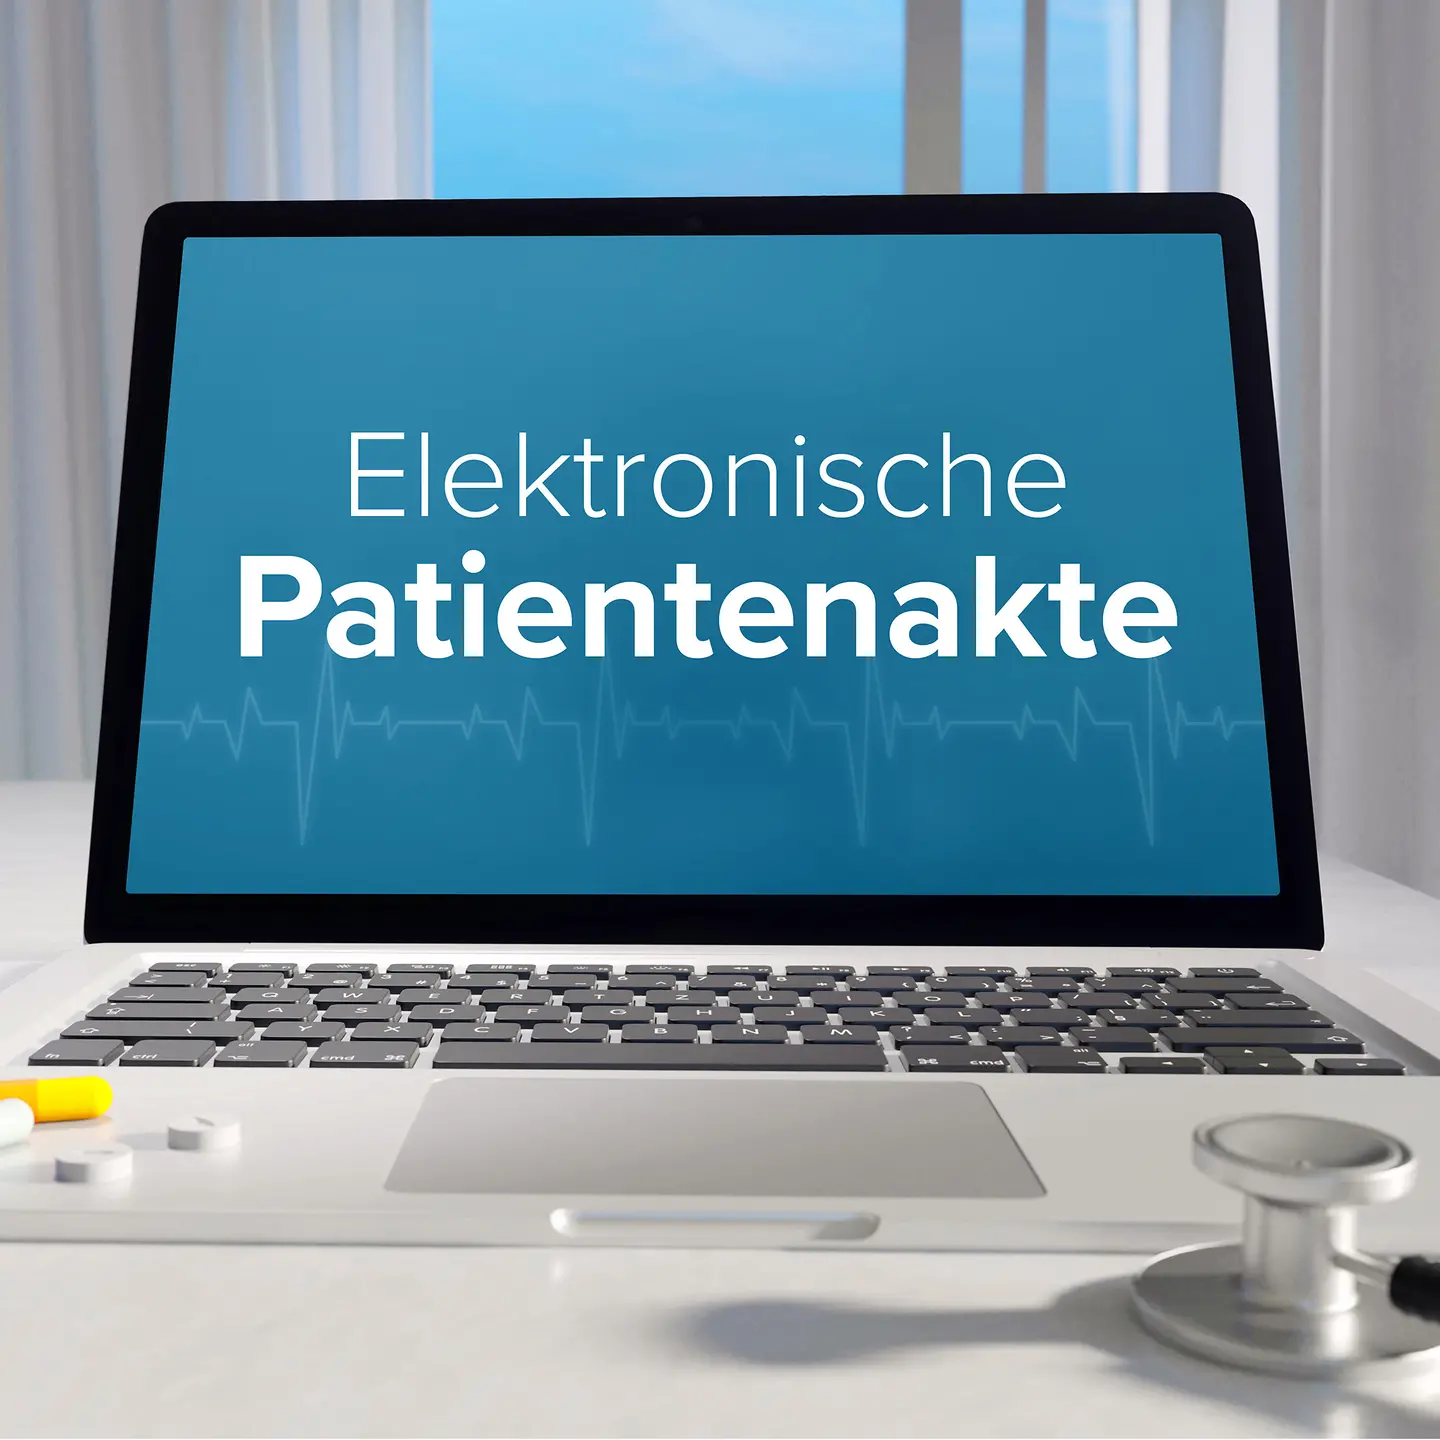 Das Bild zeigt einen Laptop mit der Anzeige Elektronische Patientenakte.